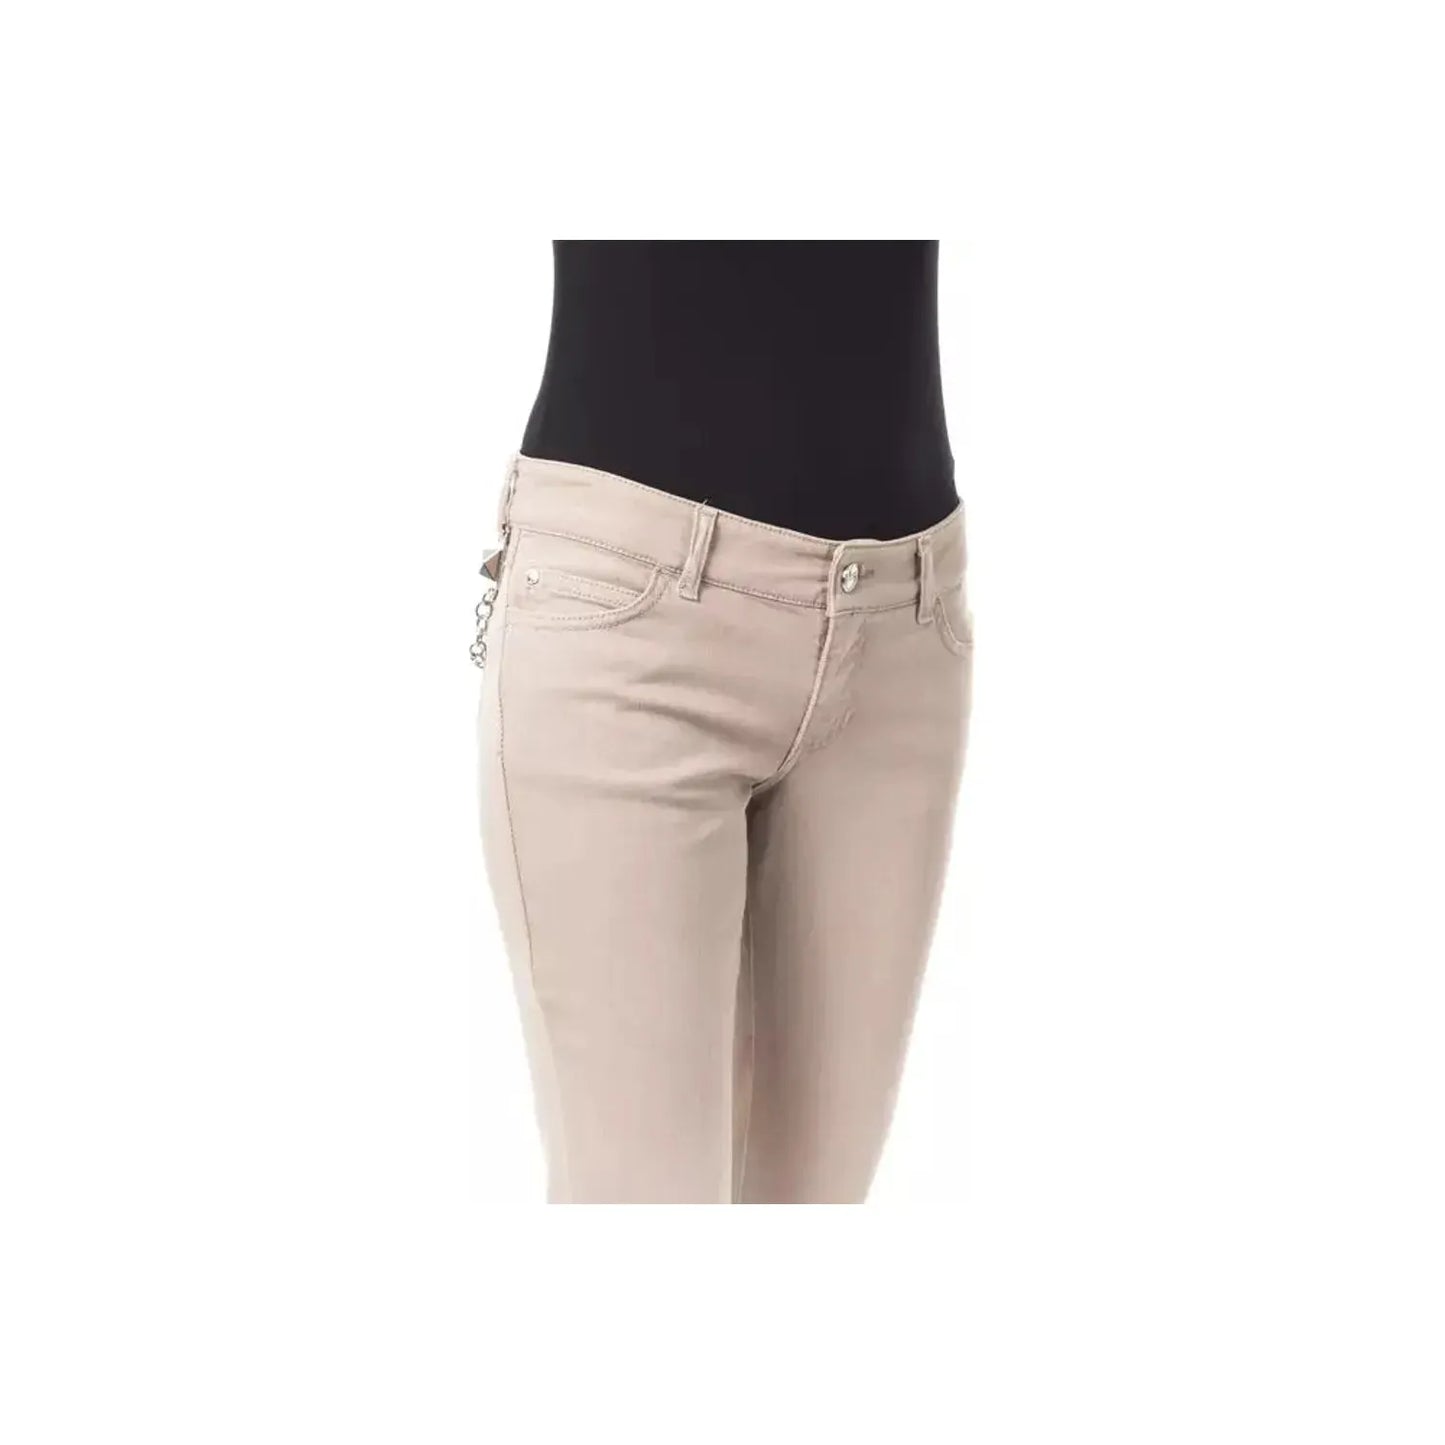 BYBLOS Elegant Beige Slim Fit Pants with Unique Chain Detail beige-cotton-jeans-pant-19 stock_product_image_17634_1934016192-15-32641b84-e8e.webp